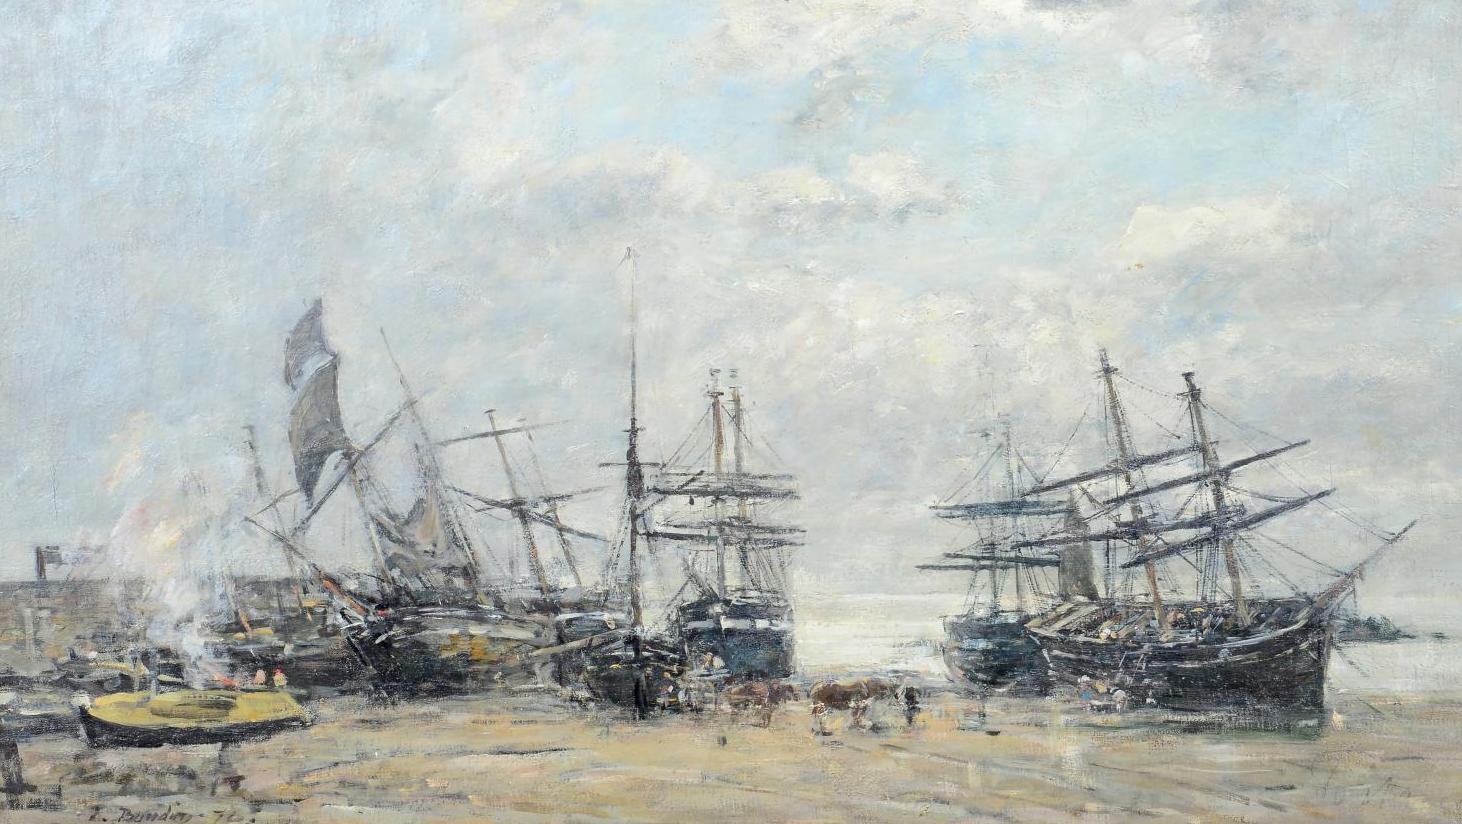 Eugène Boudin (1824-1898), Portrieux, marée basse, 1875, huile sur toile, 51,5 x 75 cm.... Eugène Boudin de retour de pêche au Portrieux en Bretagne